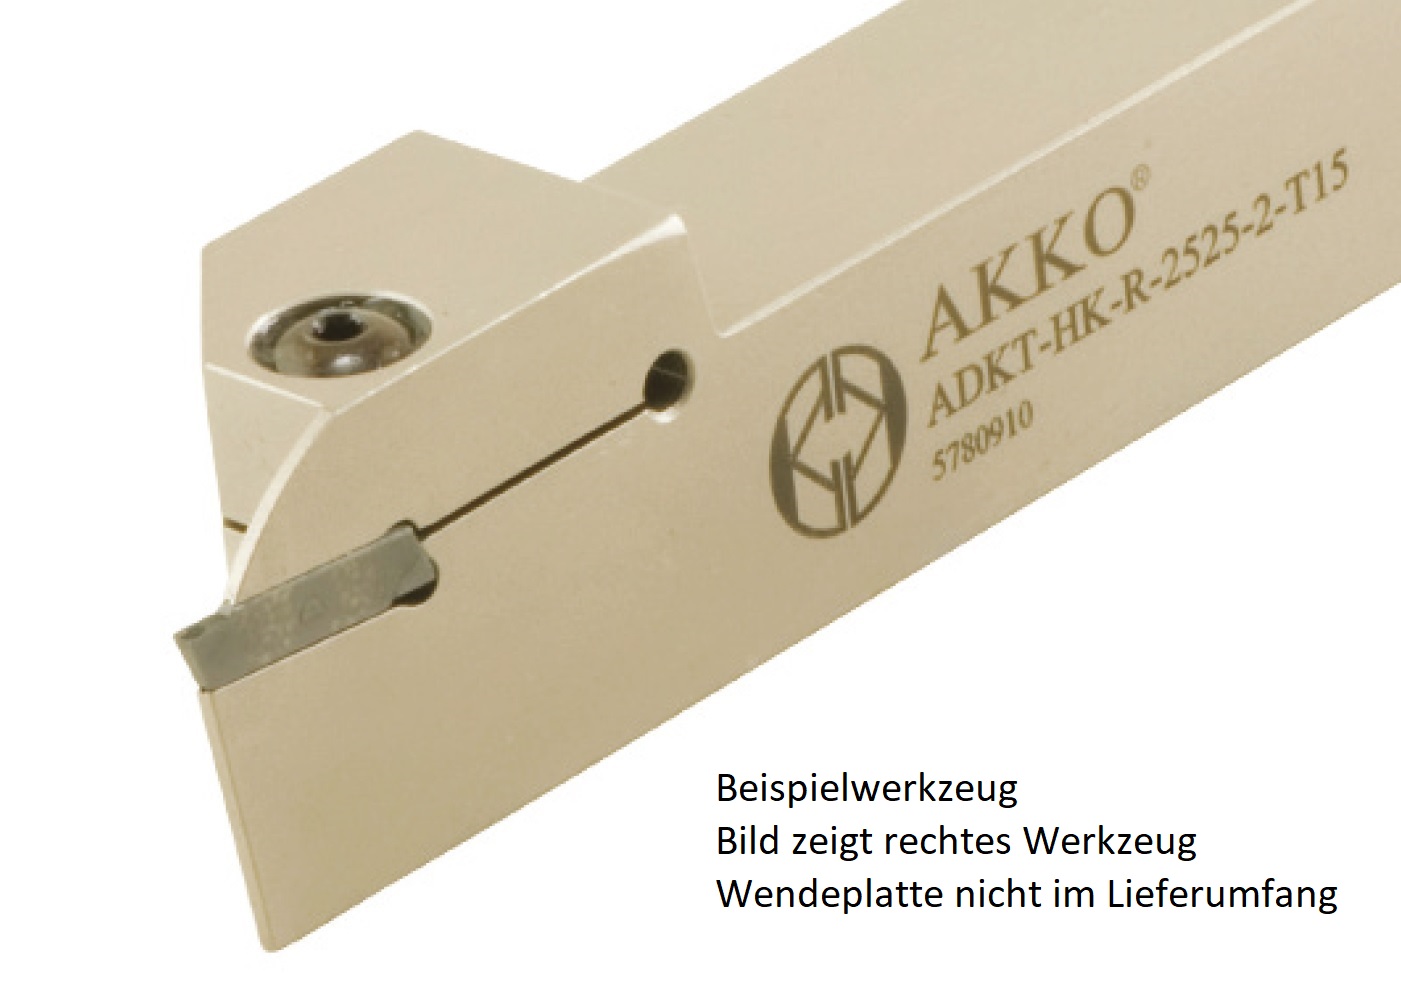 Abstechhalter ADKT-HK-L-2020-2-T15